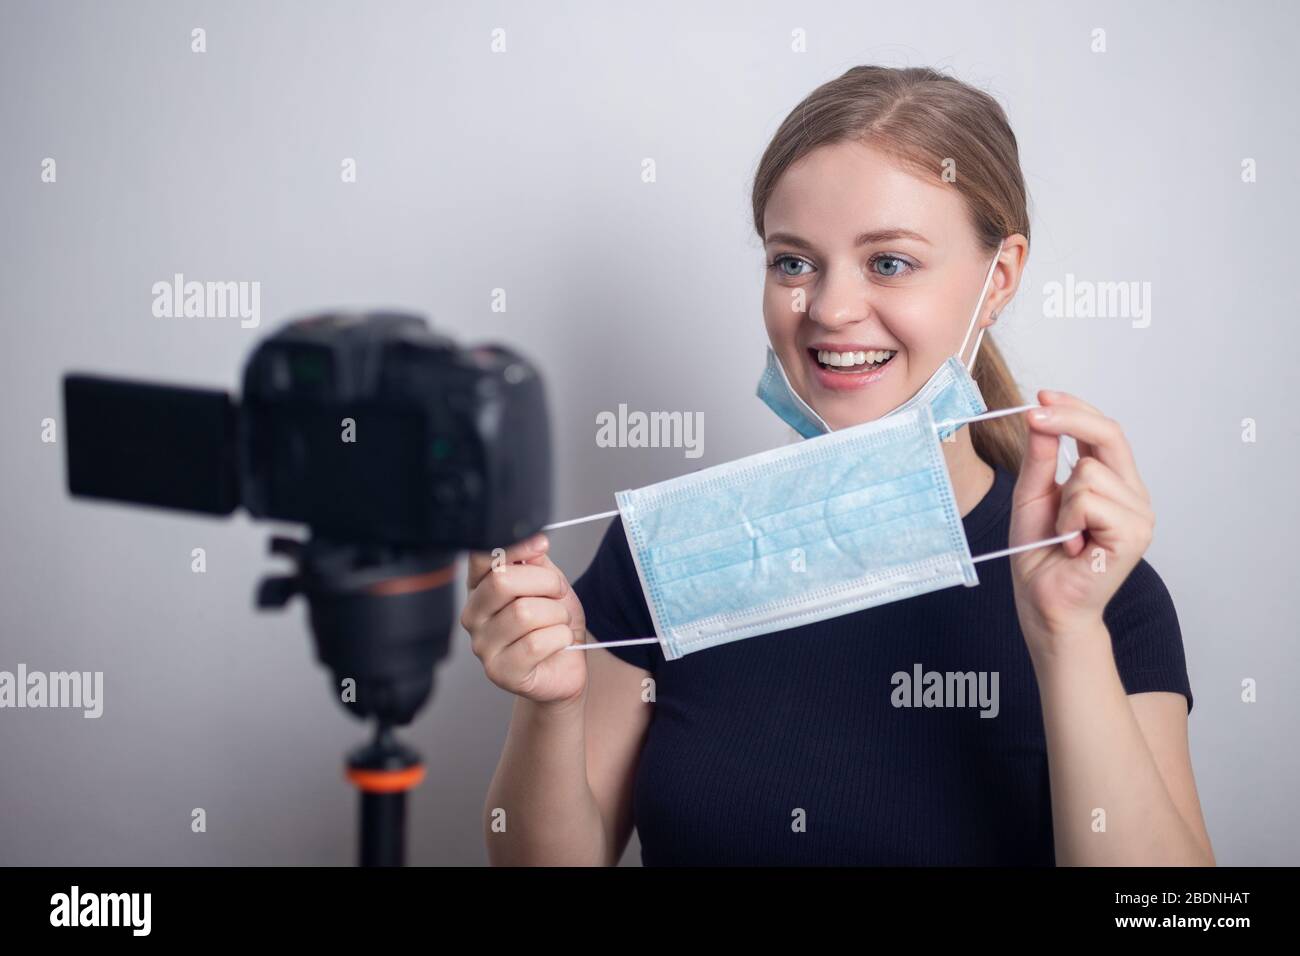 Jeune fille caucasienne souriante portant un masque, faisant un blog vidéo (vlog) avec caméra à la maison Banque D'Images